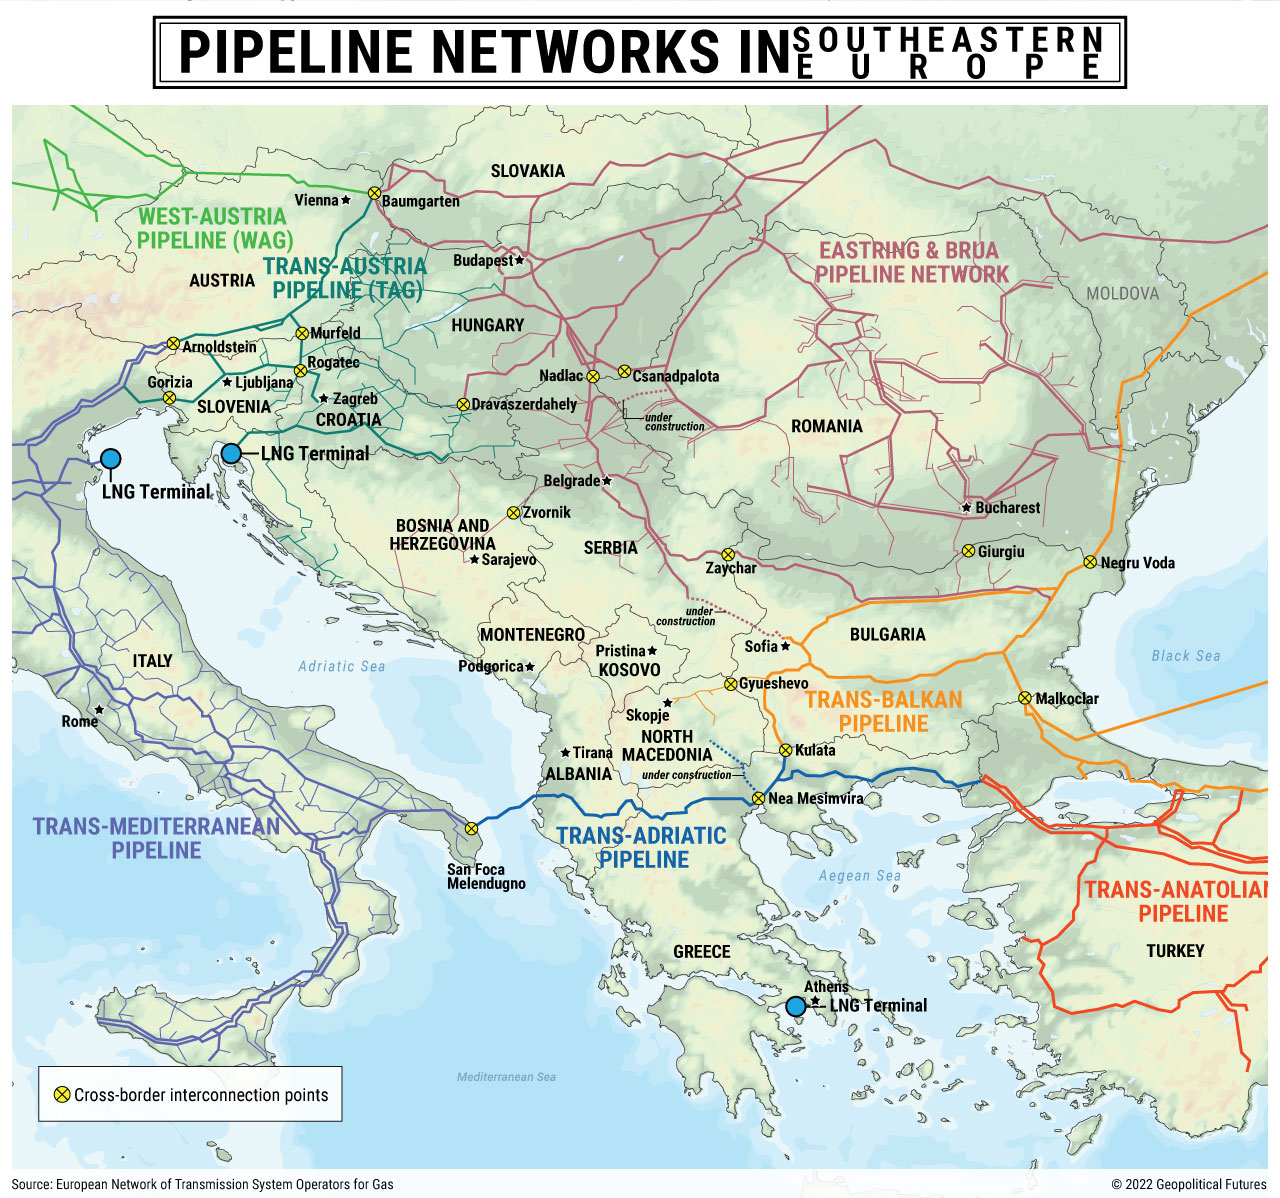 Pipeline Networks in Southeastern Europe